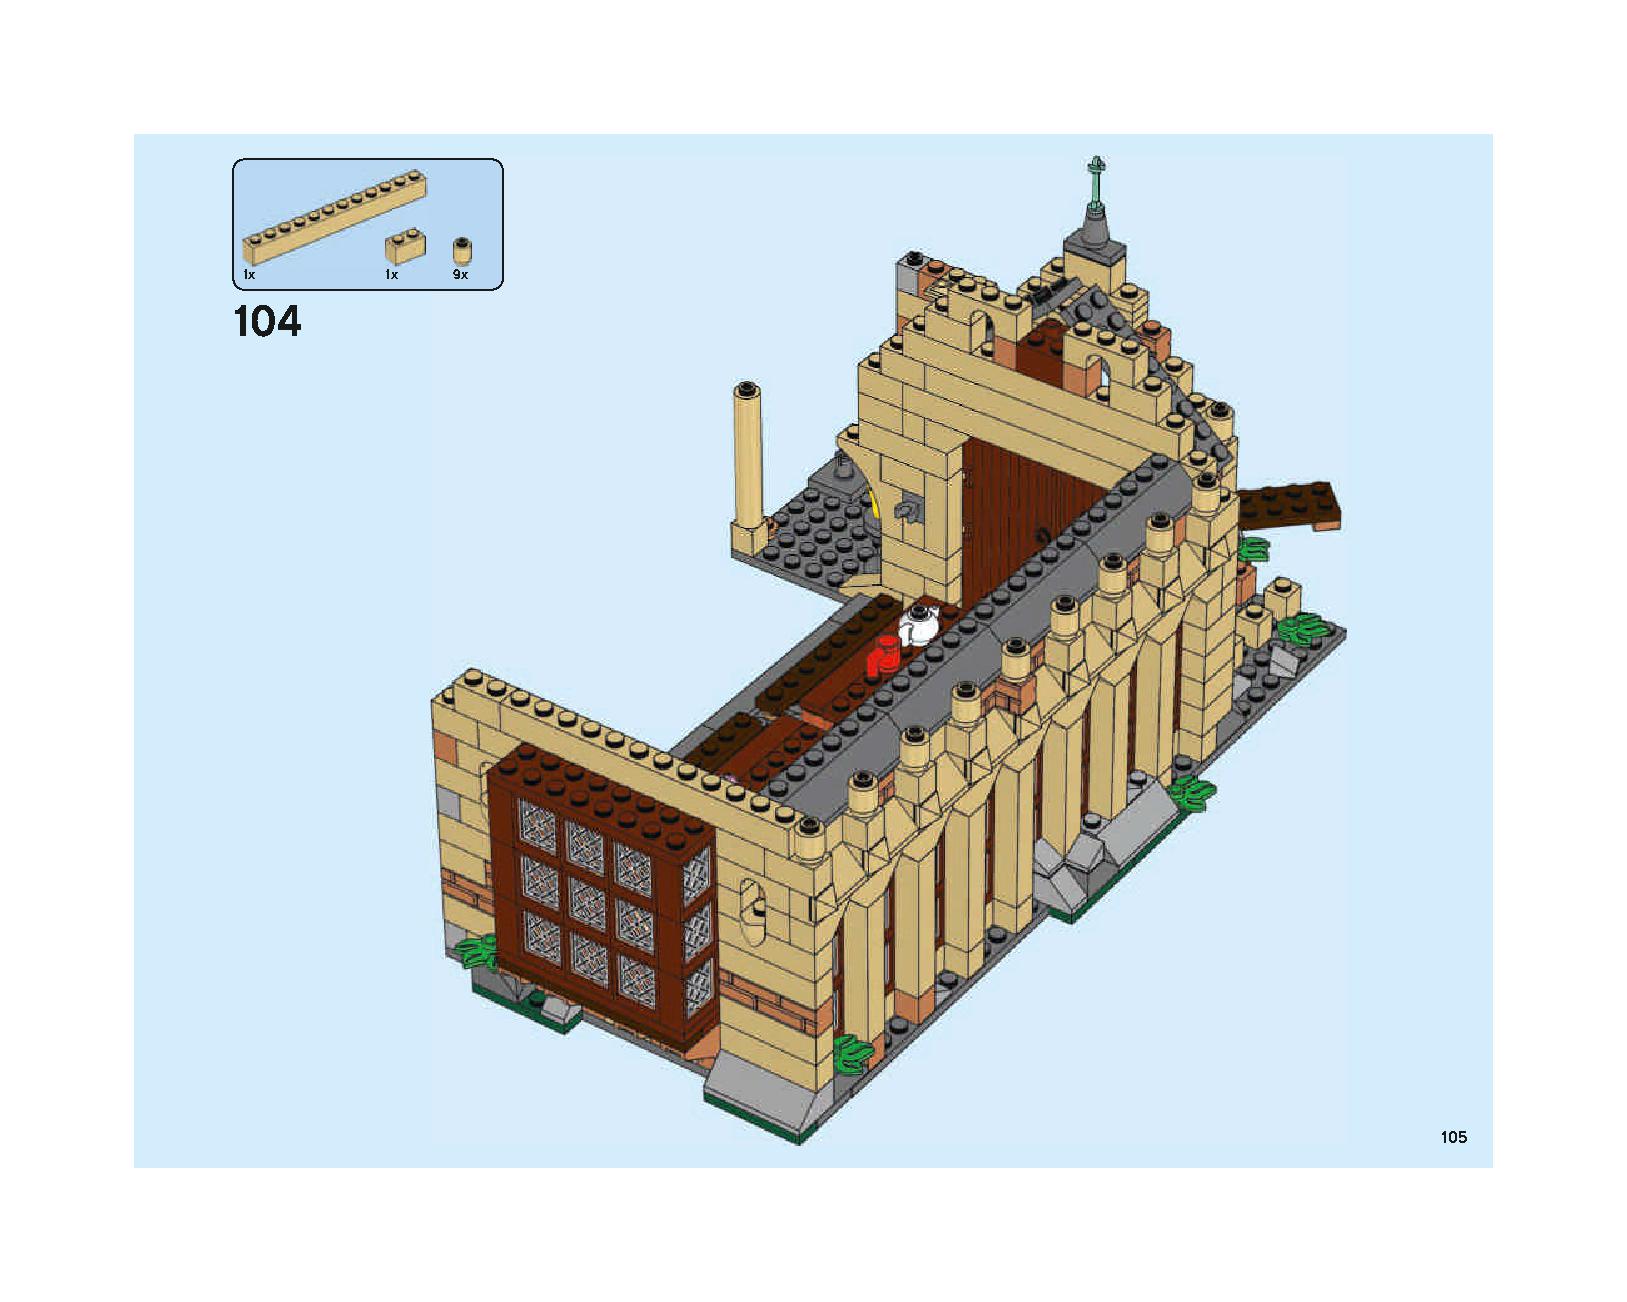 ホグワーツの大広間 75954 レゴの商品情報 レゴの説明書・組立方法 105 page